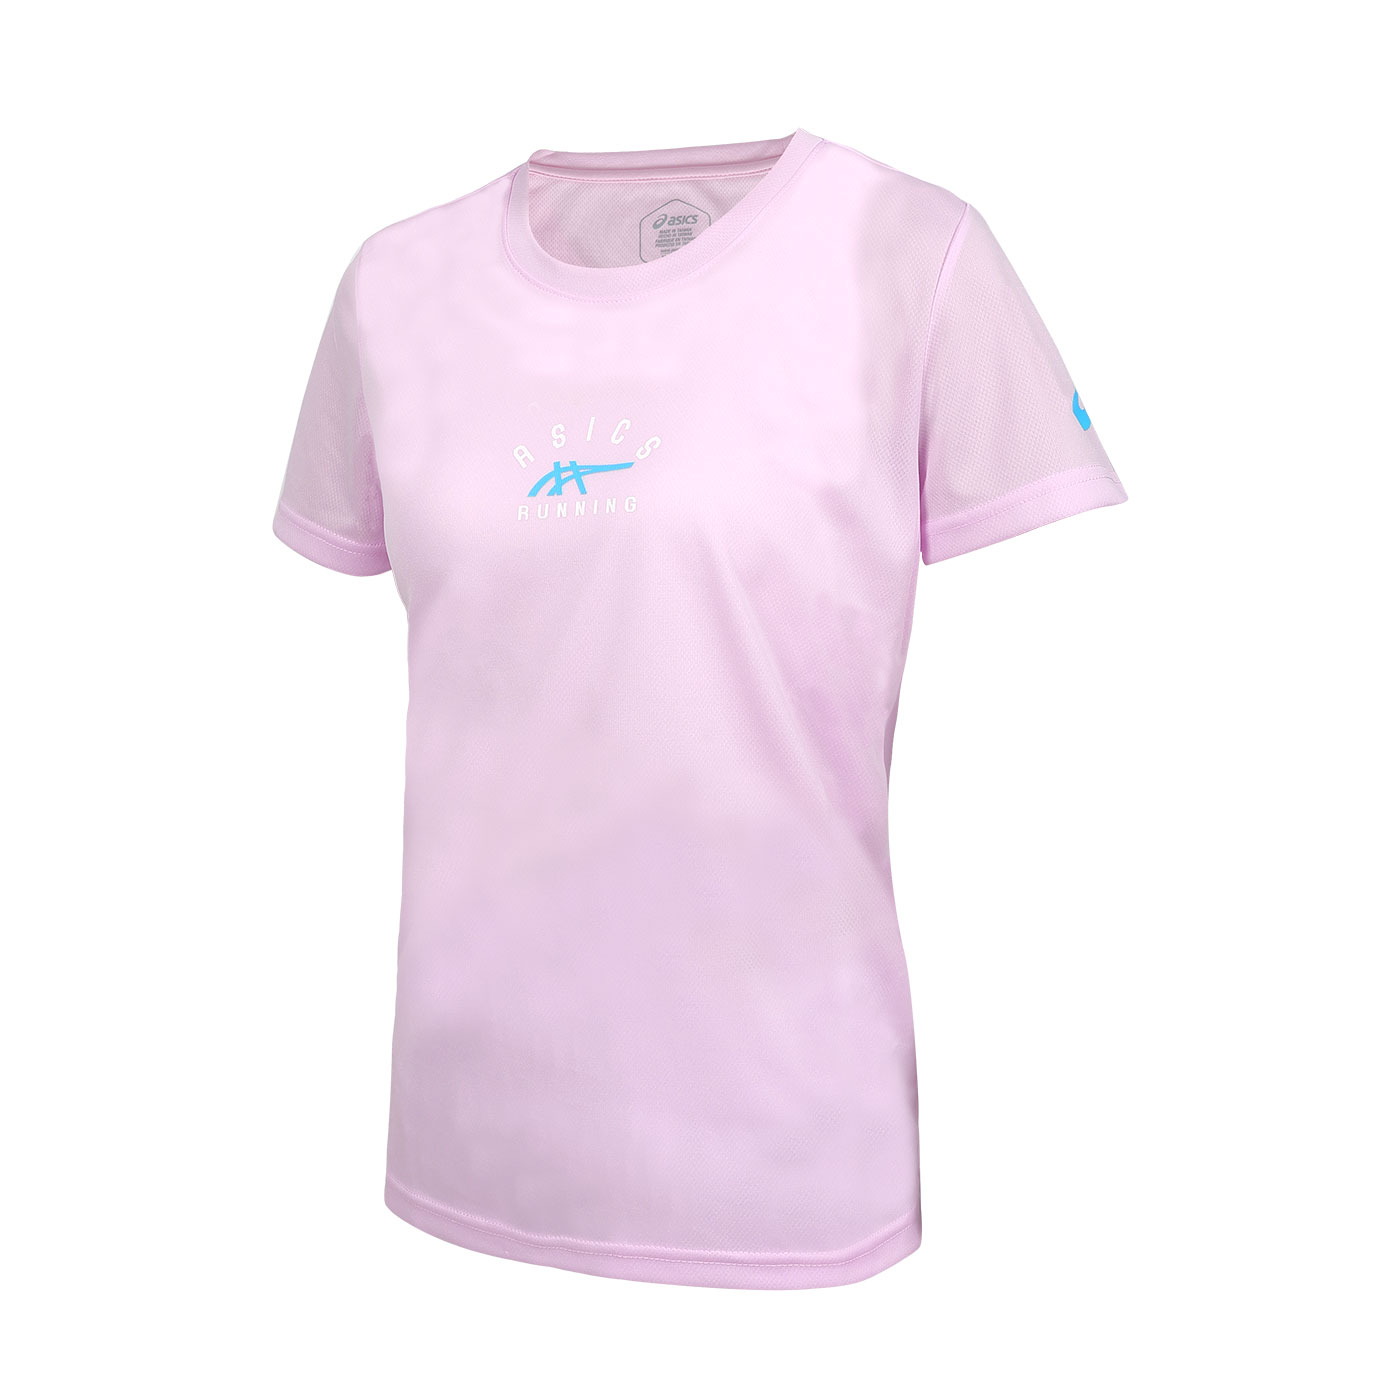 ASICS 女款短袖T恤  2012D104-500